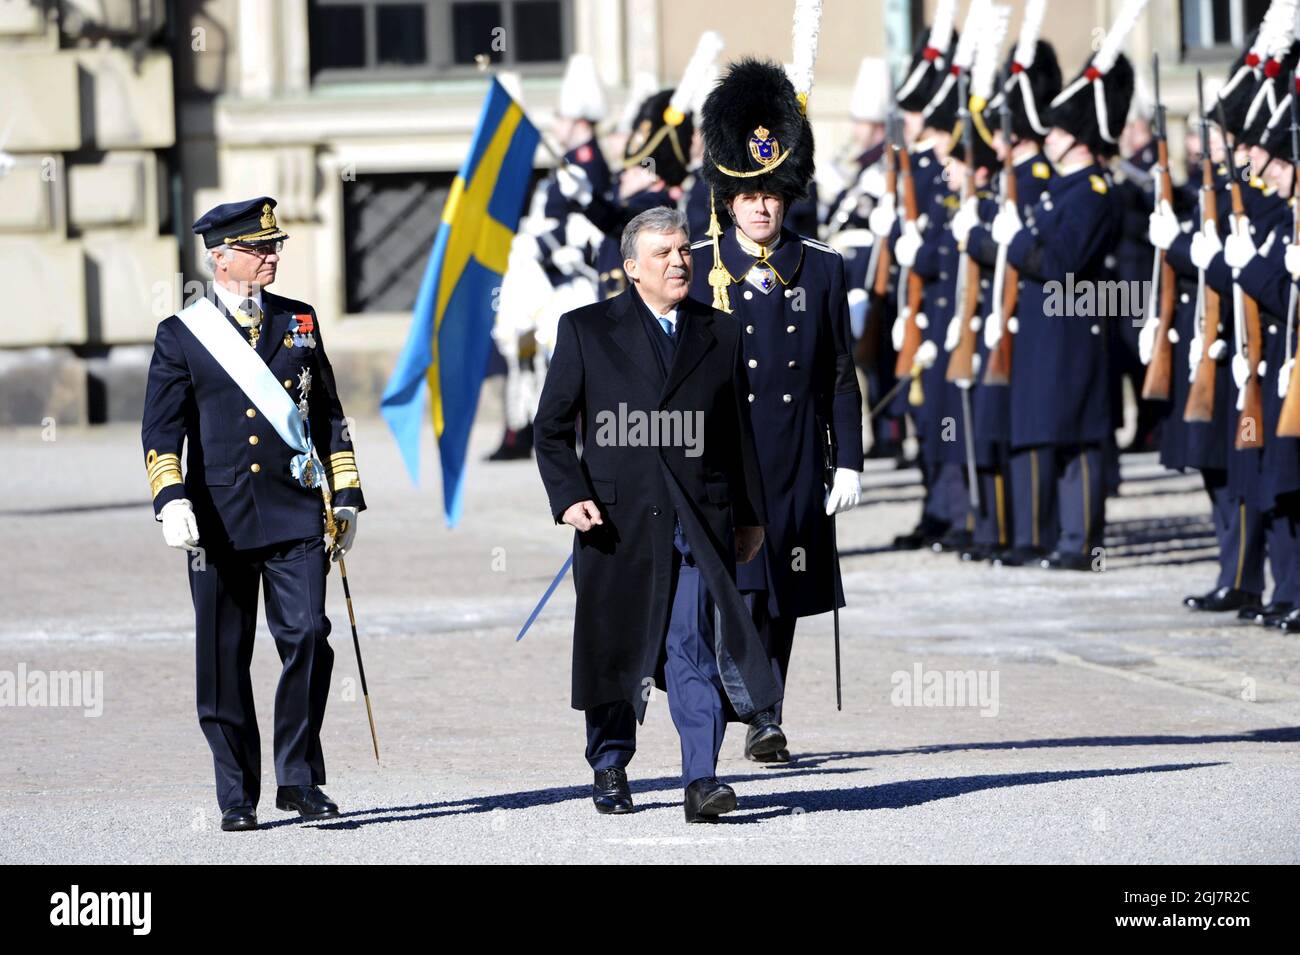 La esposa del presidente turco Abdullah Gul es vista junto con el rey Carl Gustaf de Suecia durante la inspección de la Guardia Real durante una ceremonia en el patio del Palacio Real en Estocolmo, Suecia, el 11 de marzo de 2013. El Presidente turco realiza una visita de Estado a Suecia de tres días de duración. Foto de stock